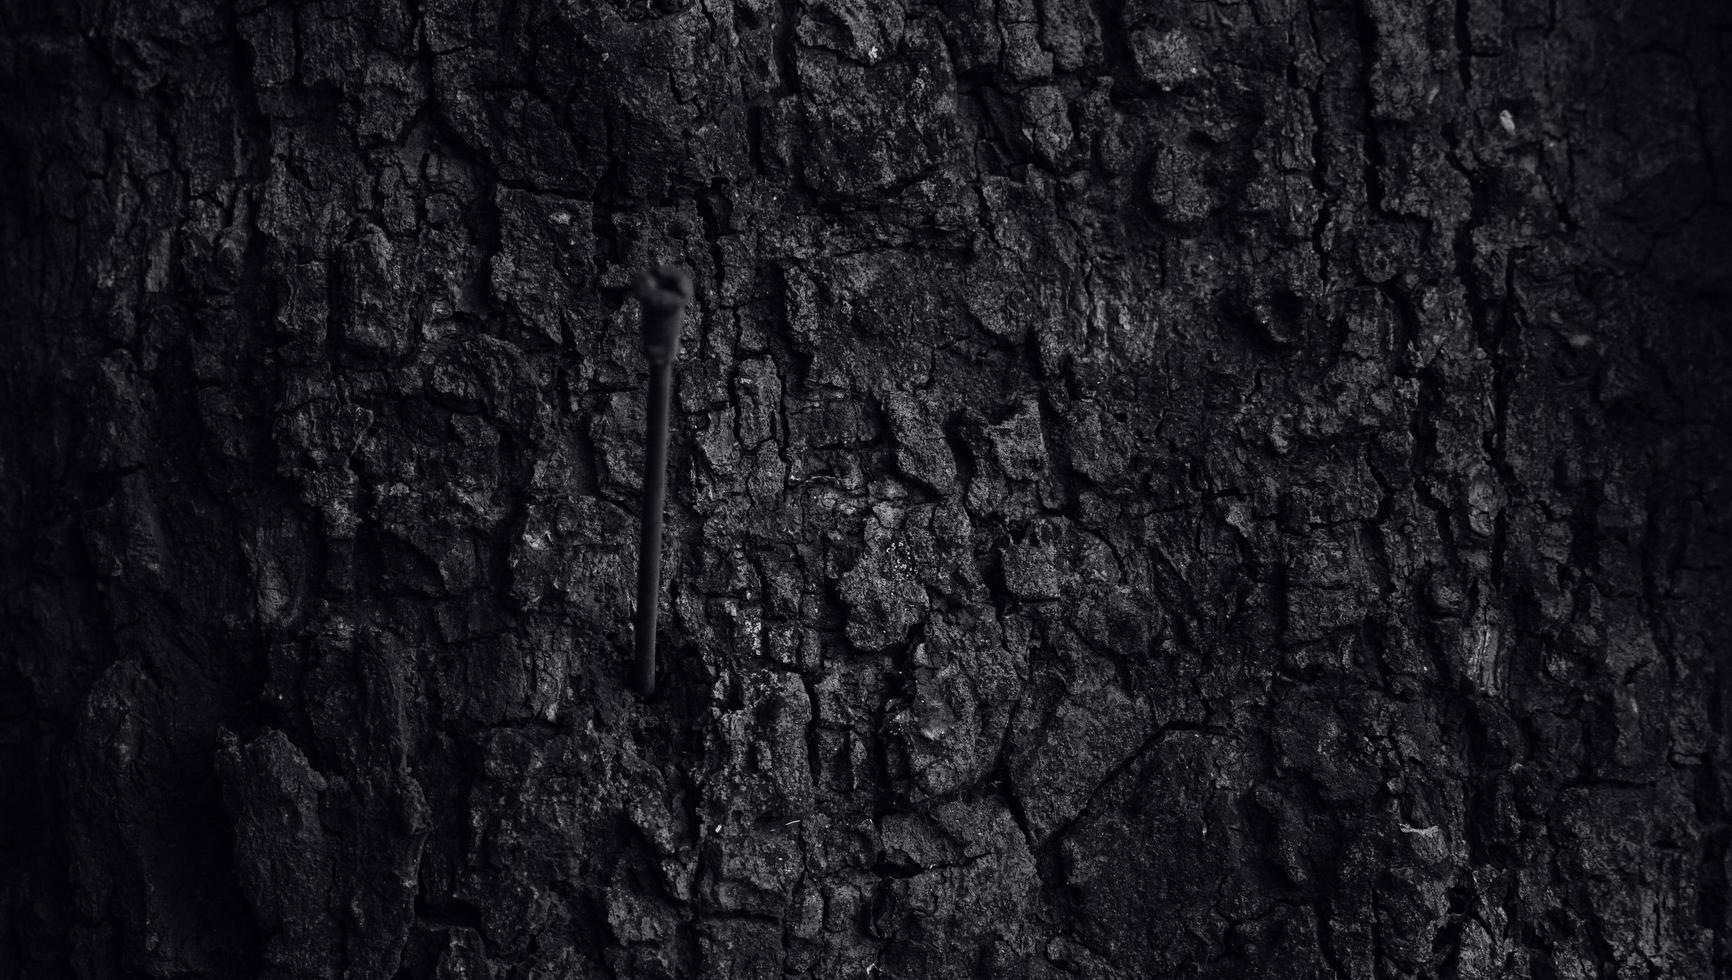 la trama della corteccia con un foro a fessura, la superficie del tronco d'albero di colore scuro. la consistenza naturale della silvicoltura foto